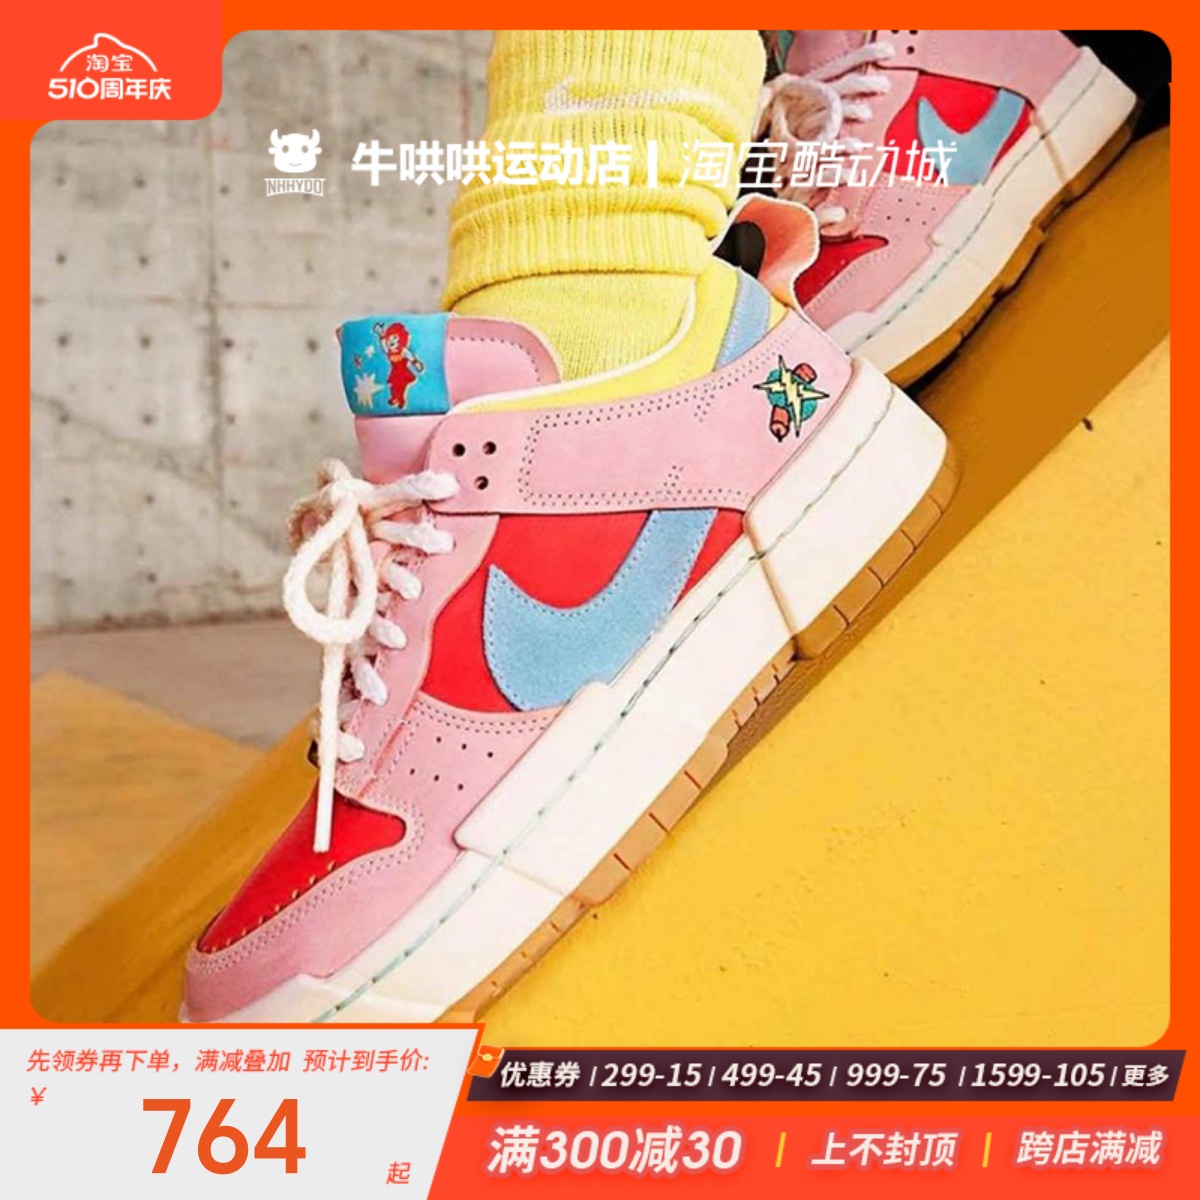 牛哄哄Nike Dunk Disrupt Firecracker爆竹热感应板鞋 DD8478-641